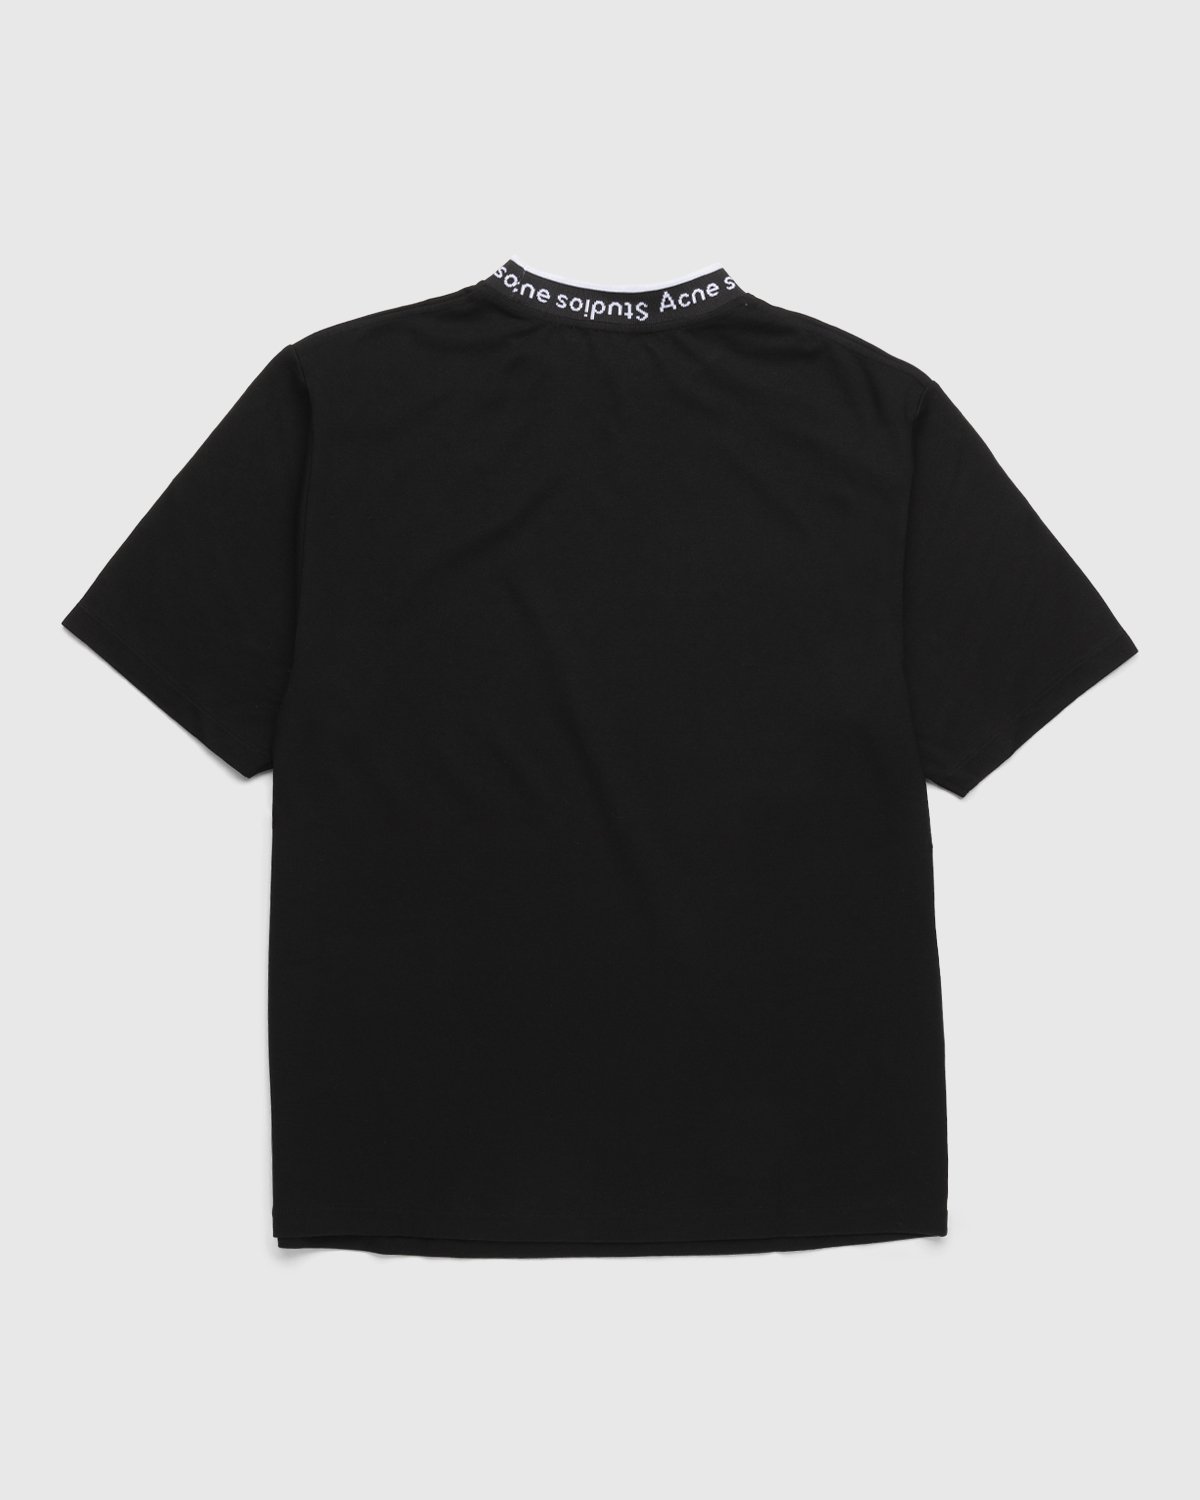 Acne Studios - Logo Rib T-Shirt Black - Clothing - Black - Image 2